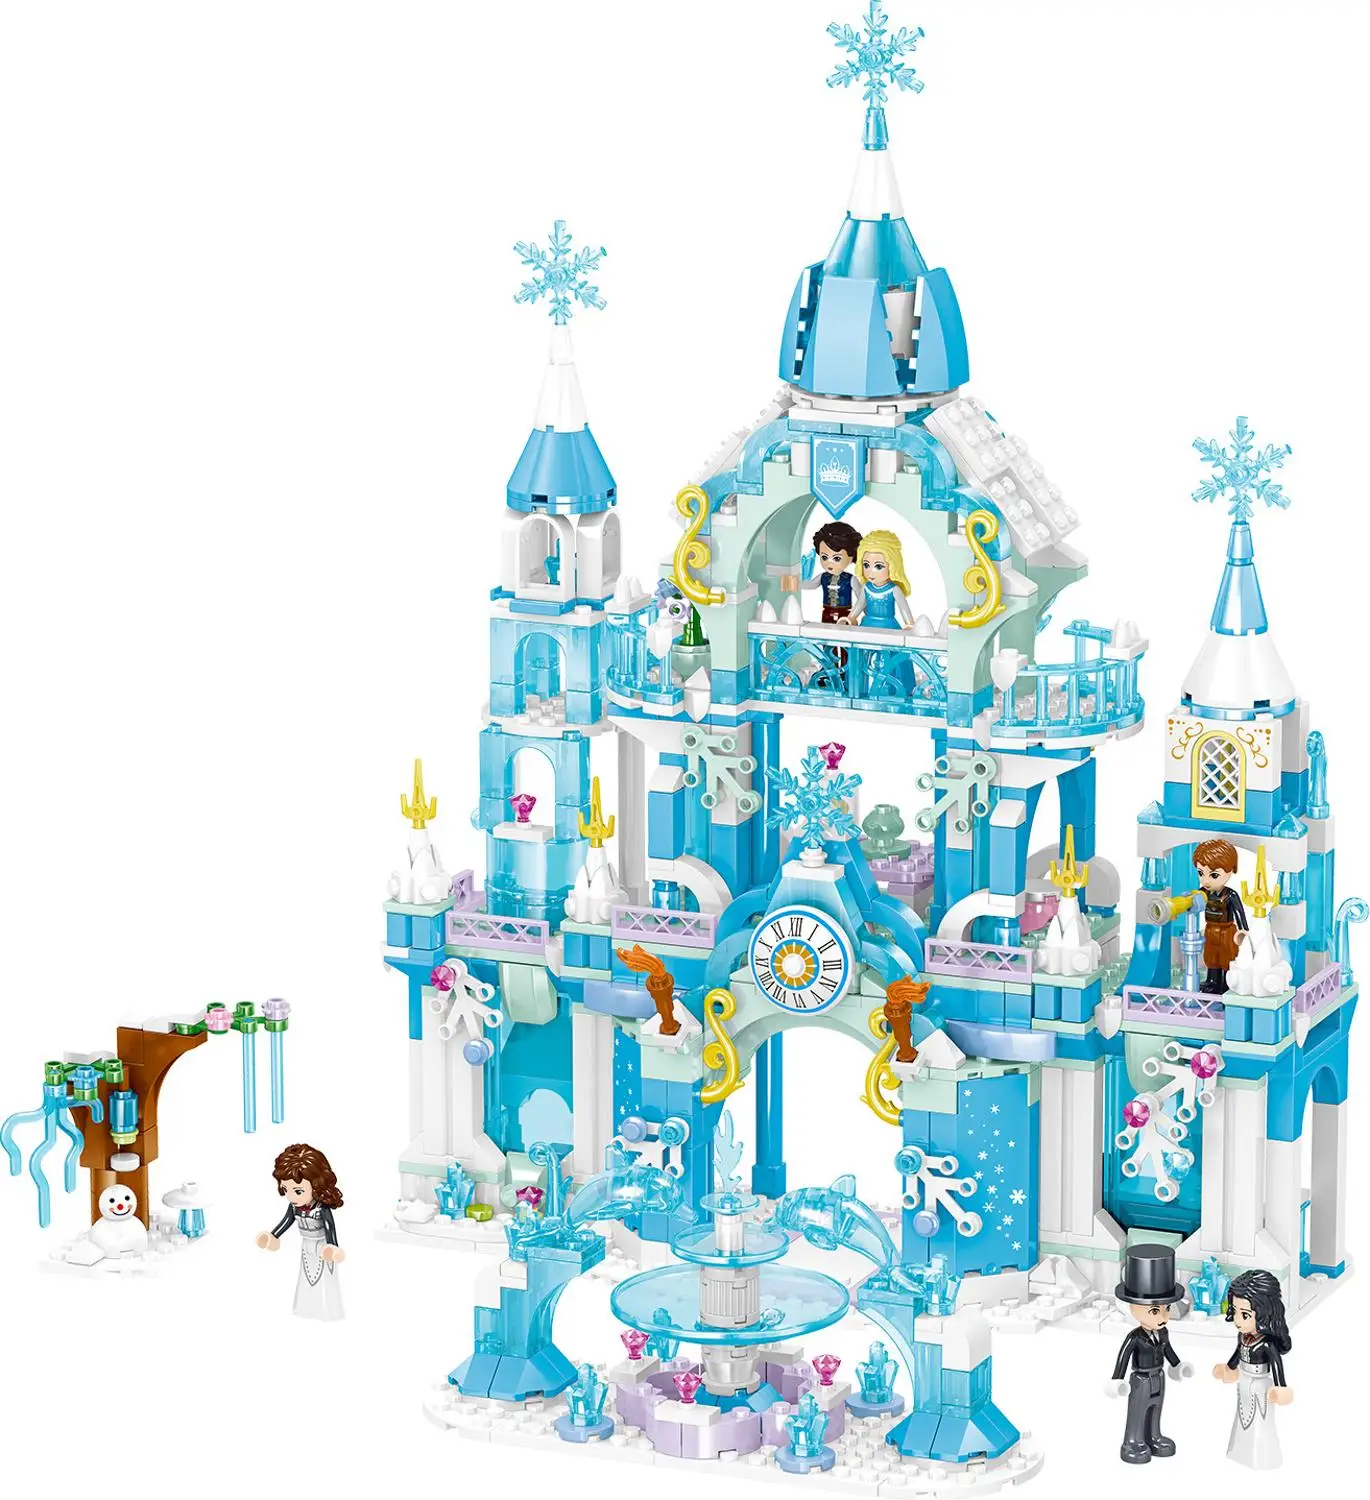 9 комплектов из серии Принцесса (Эльза-Анна лед замок строительные блоки